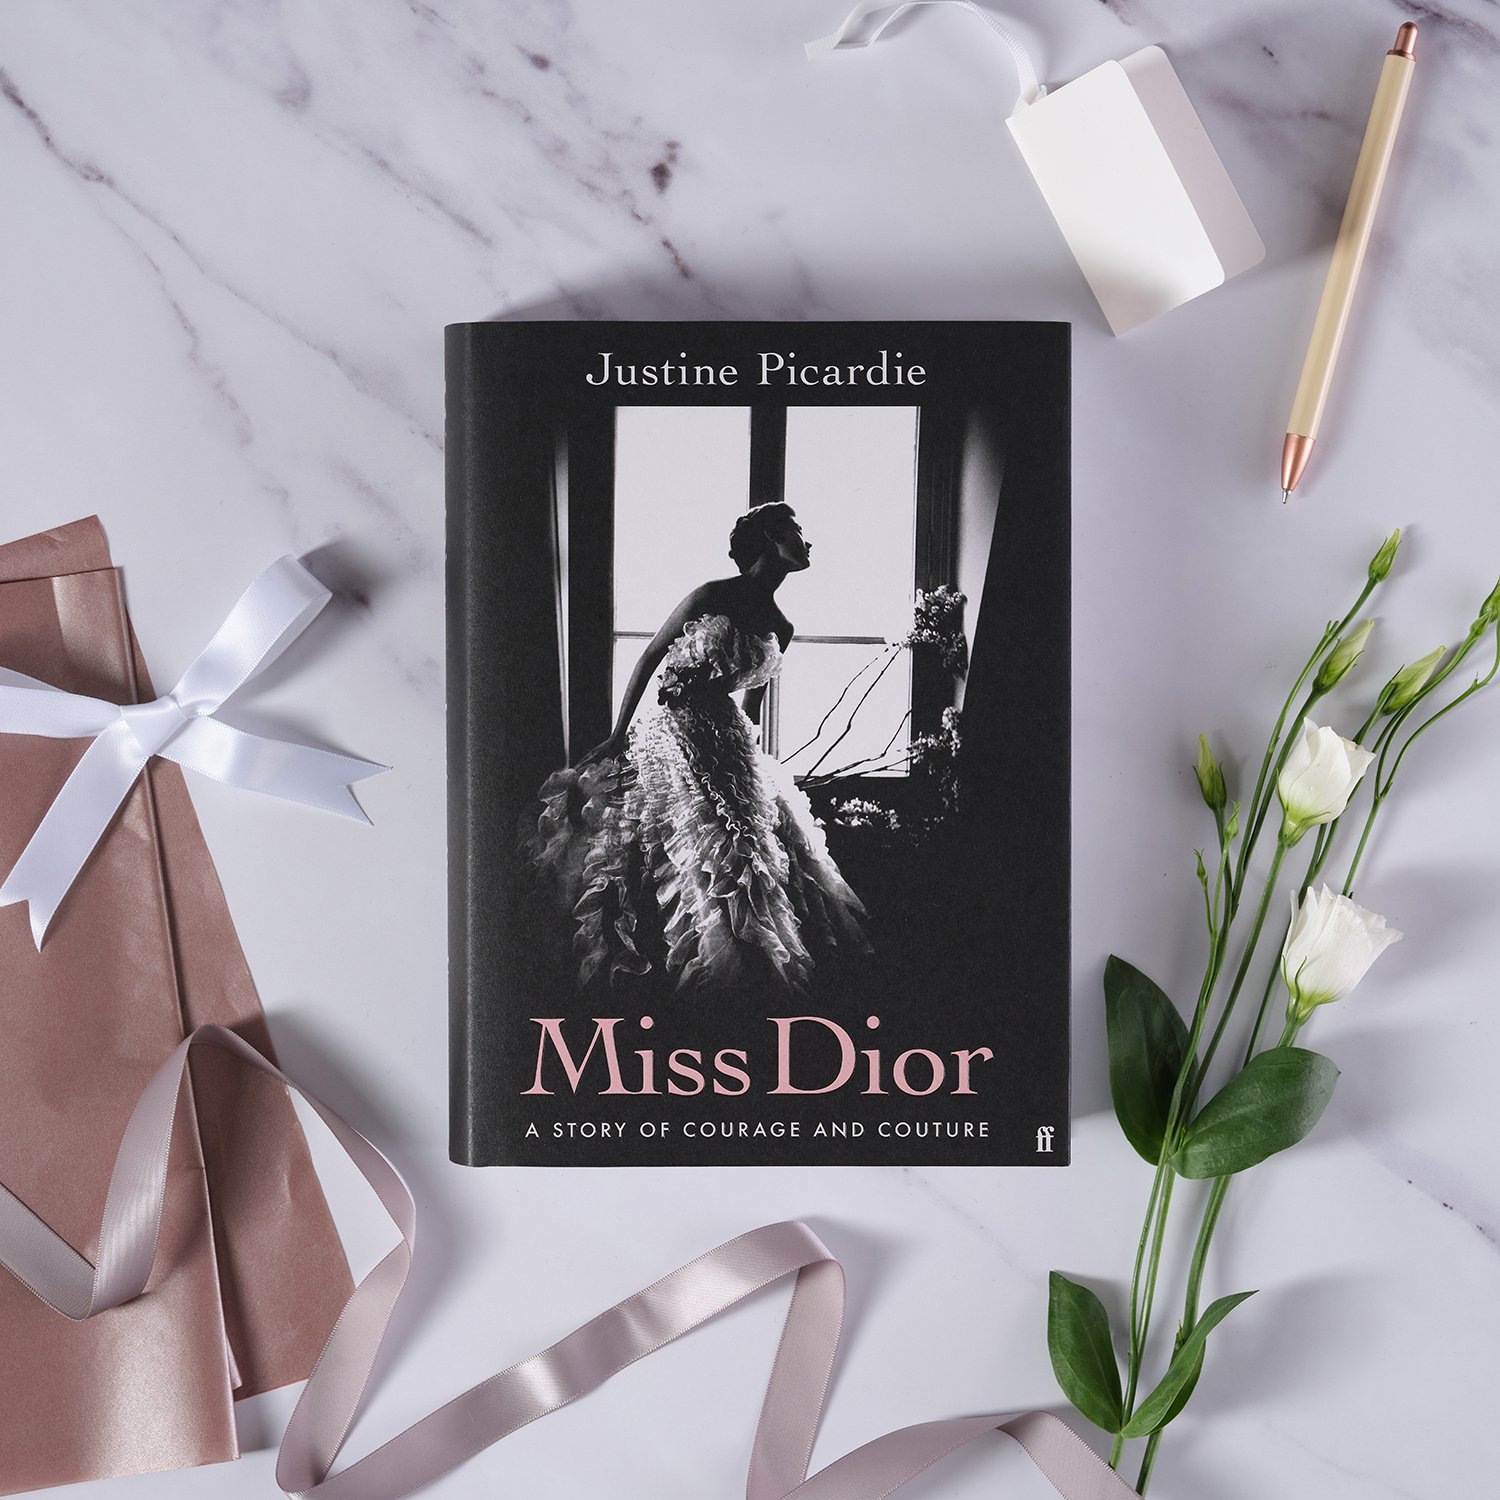 Watch: Justine Picardie talks about Miss Dior, Listen & Watch